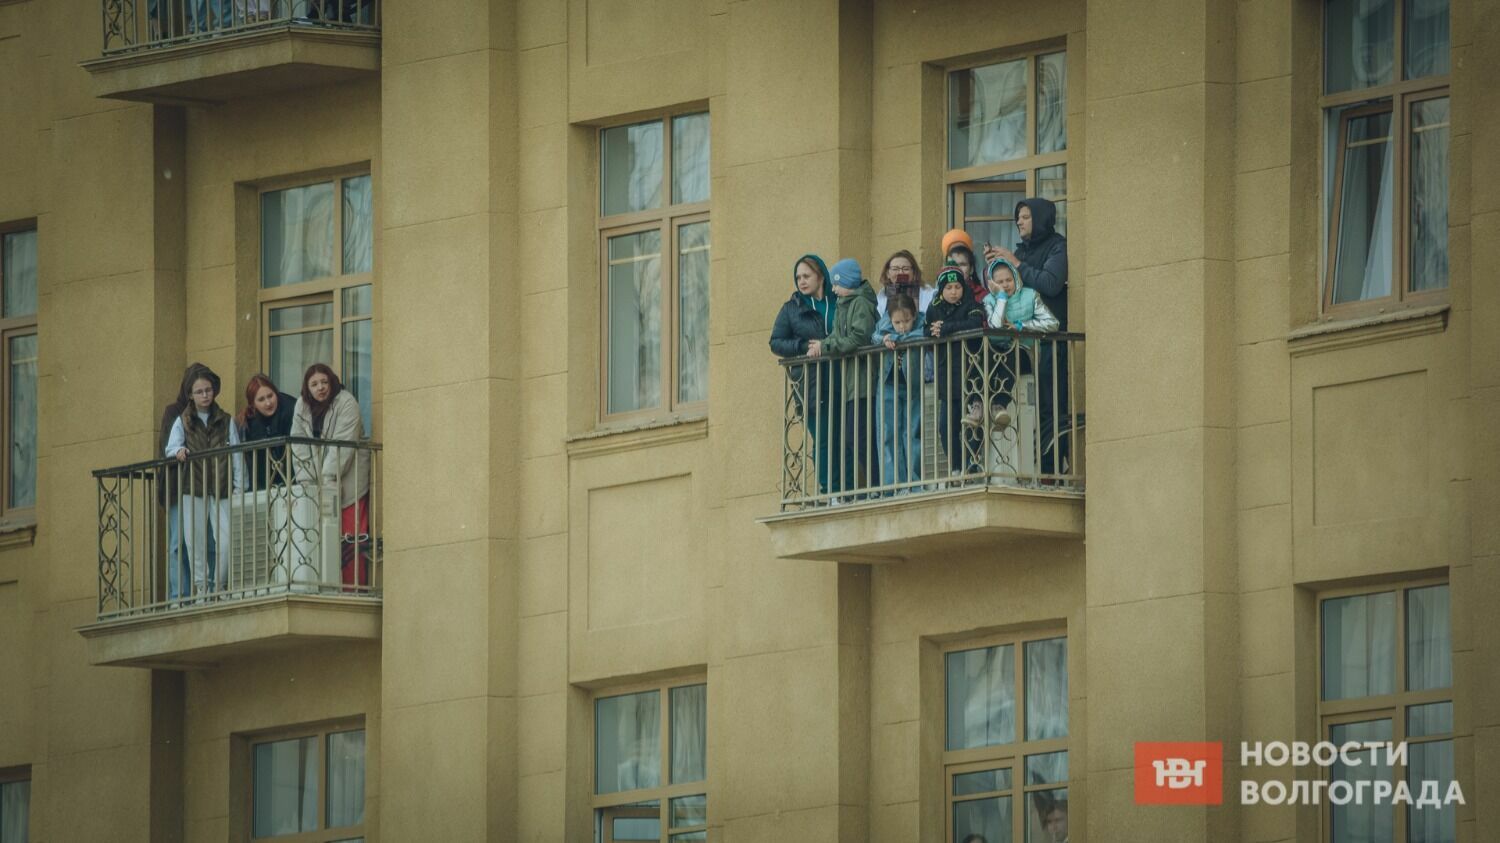 Особенно хорошо было видно парад с балконов домов, расположенных непосредственно на площади Павших Борцов.